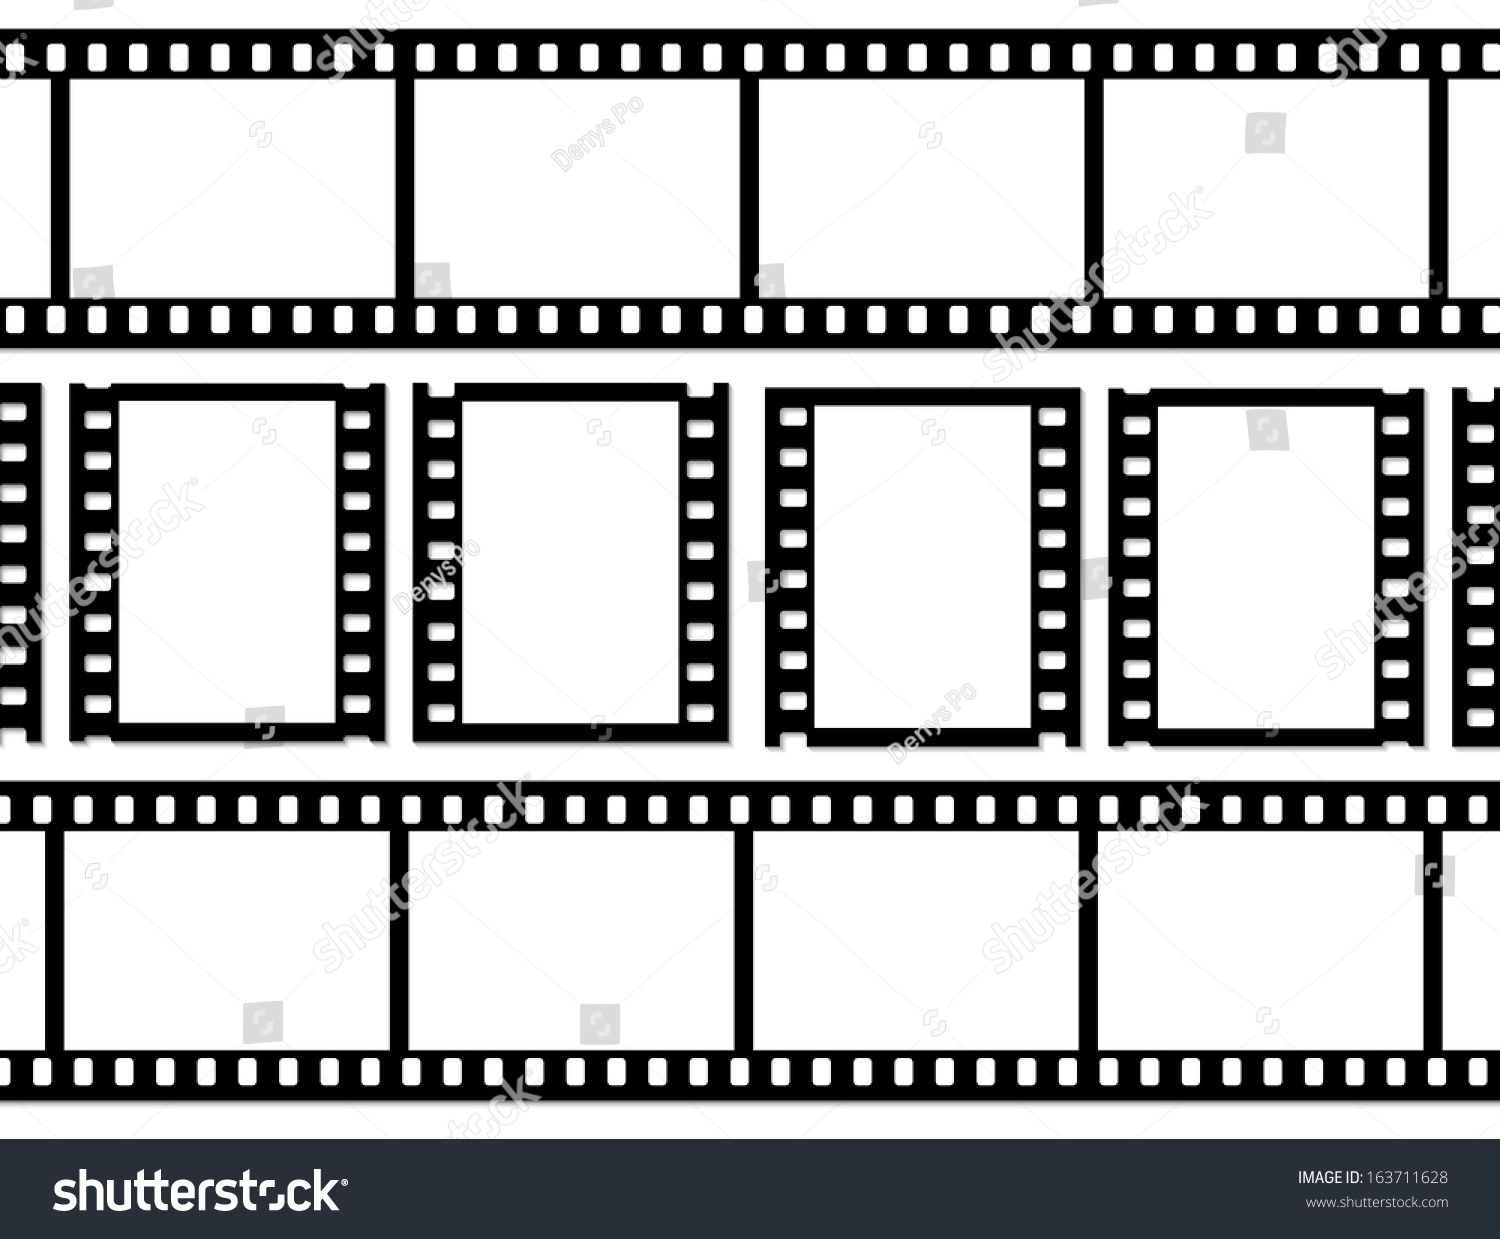 Film Frame Vector Eps 10 스톡 벡터 163711628 - Shutterstock